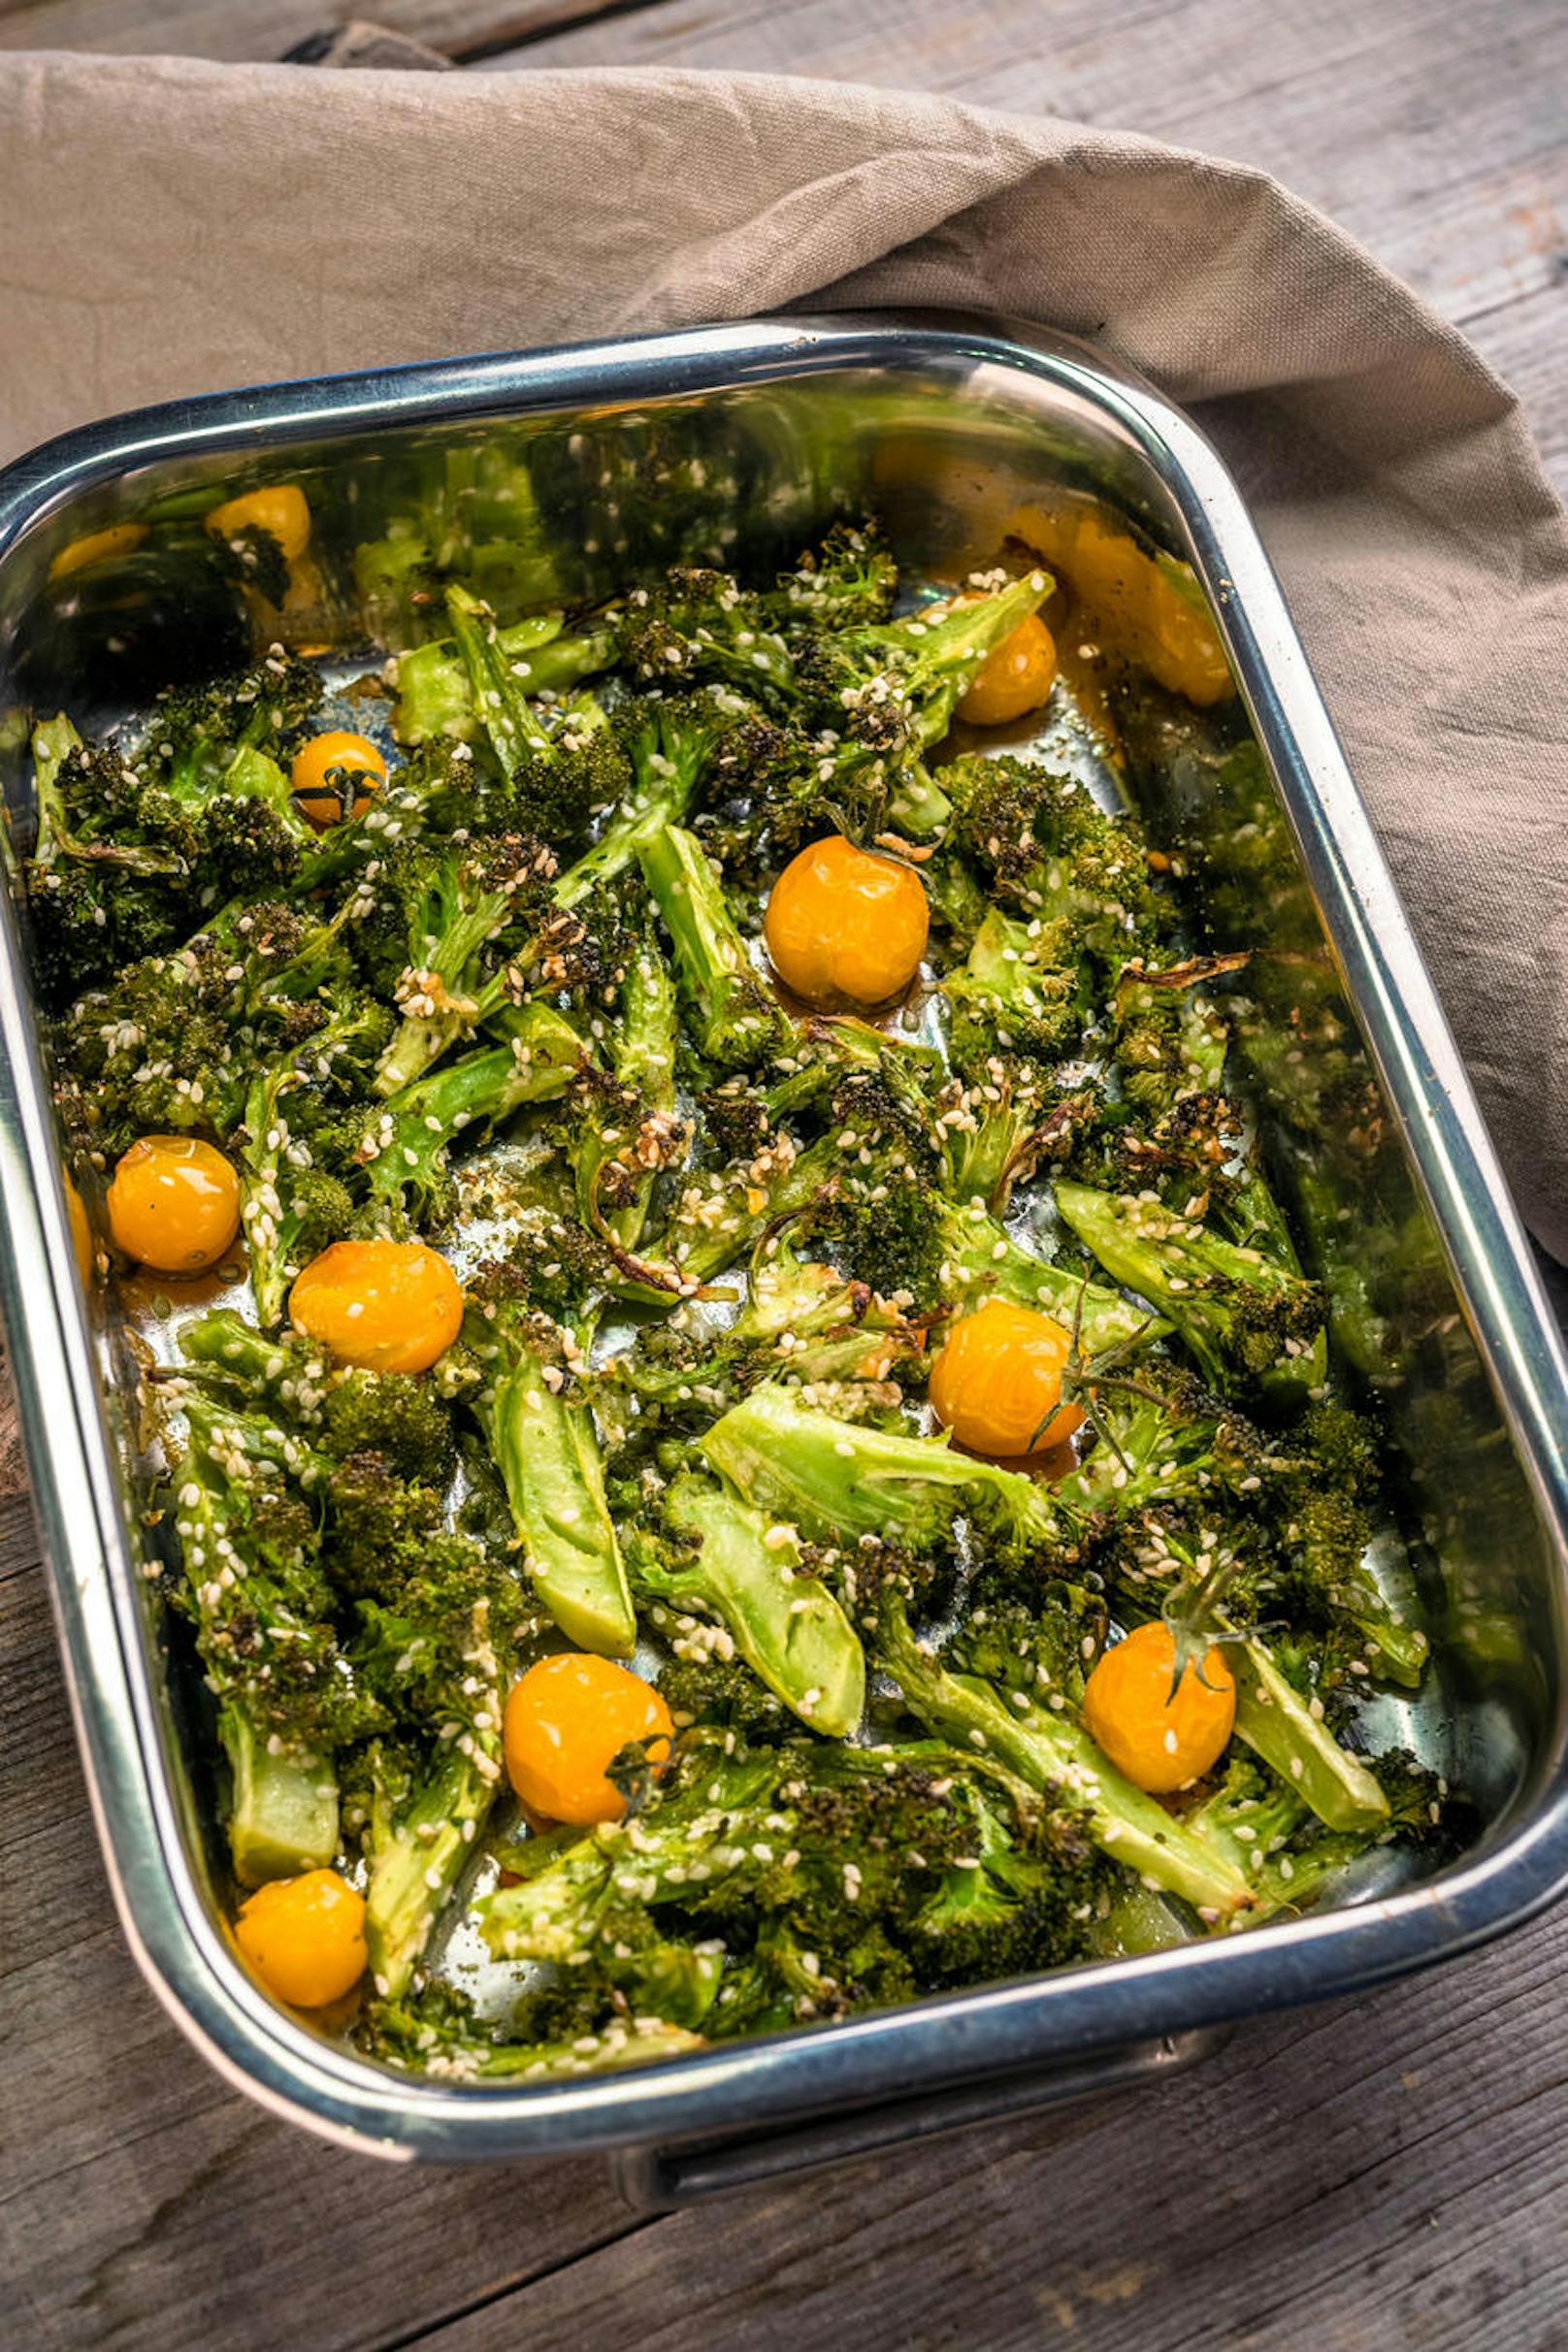 Überbackener Brokkoli

> Tipp: Am besten mit Parmesan überbacken.